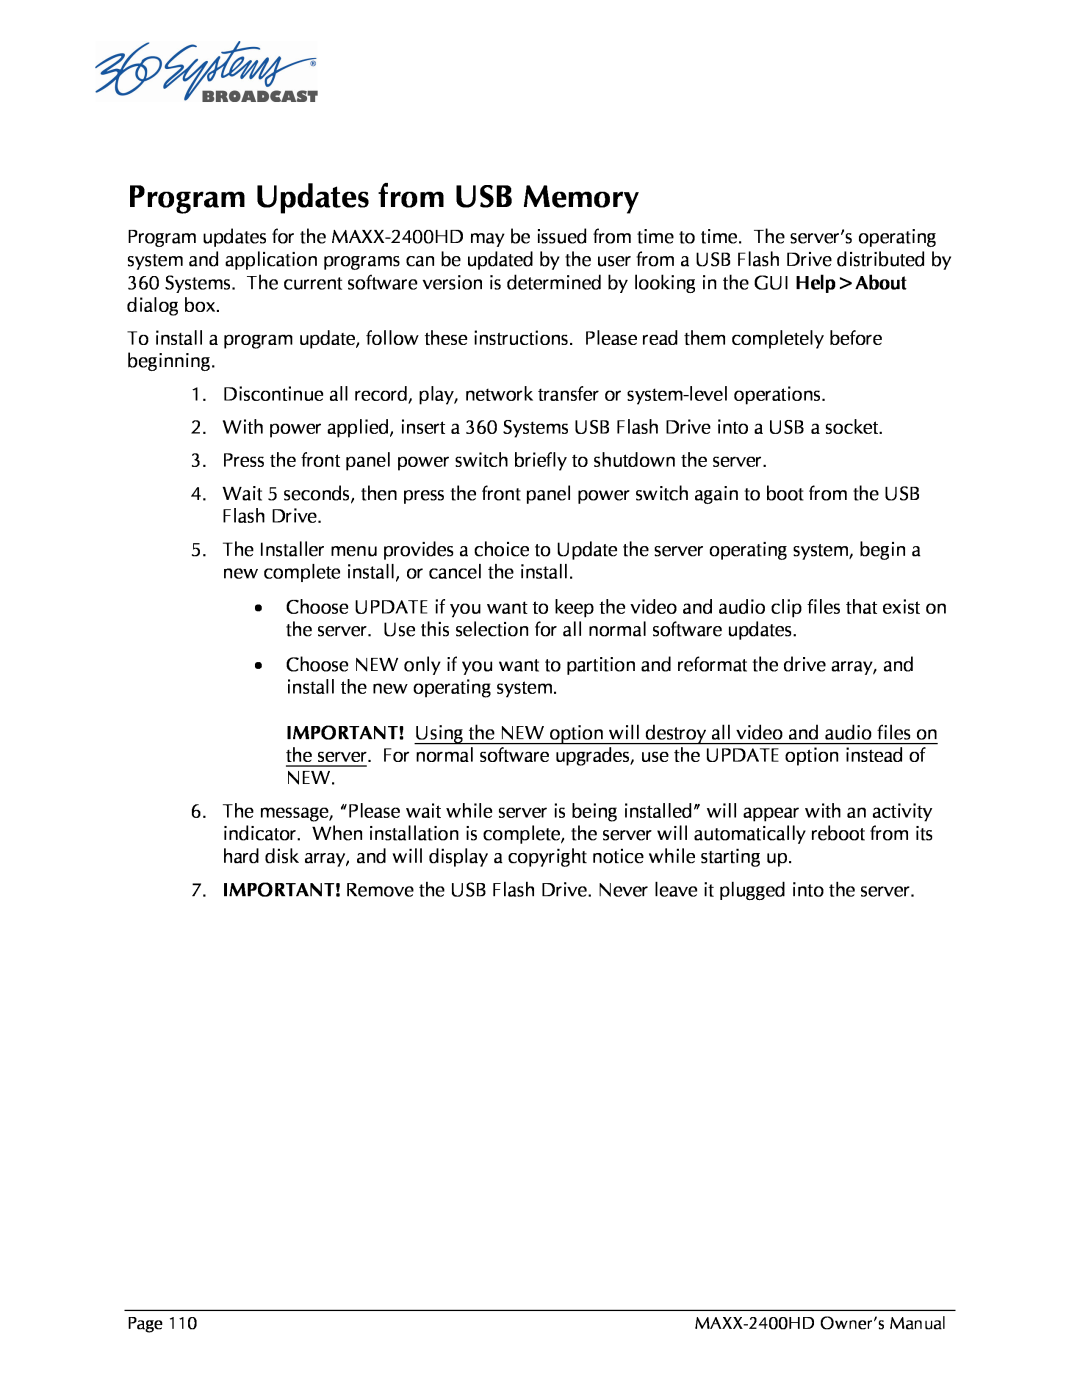 Maxxsonics MAXX-2400HD manual Program Updates from USB Memory 